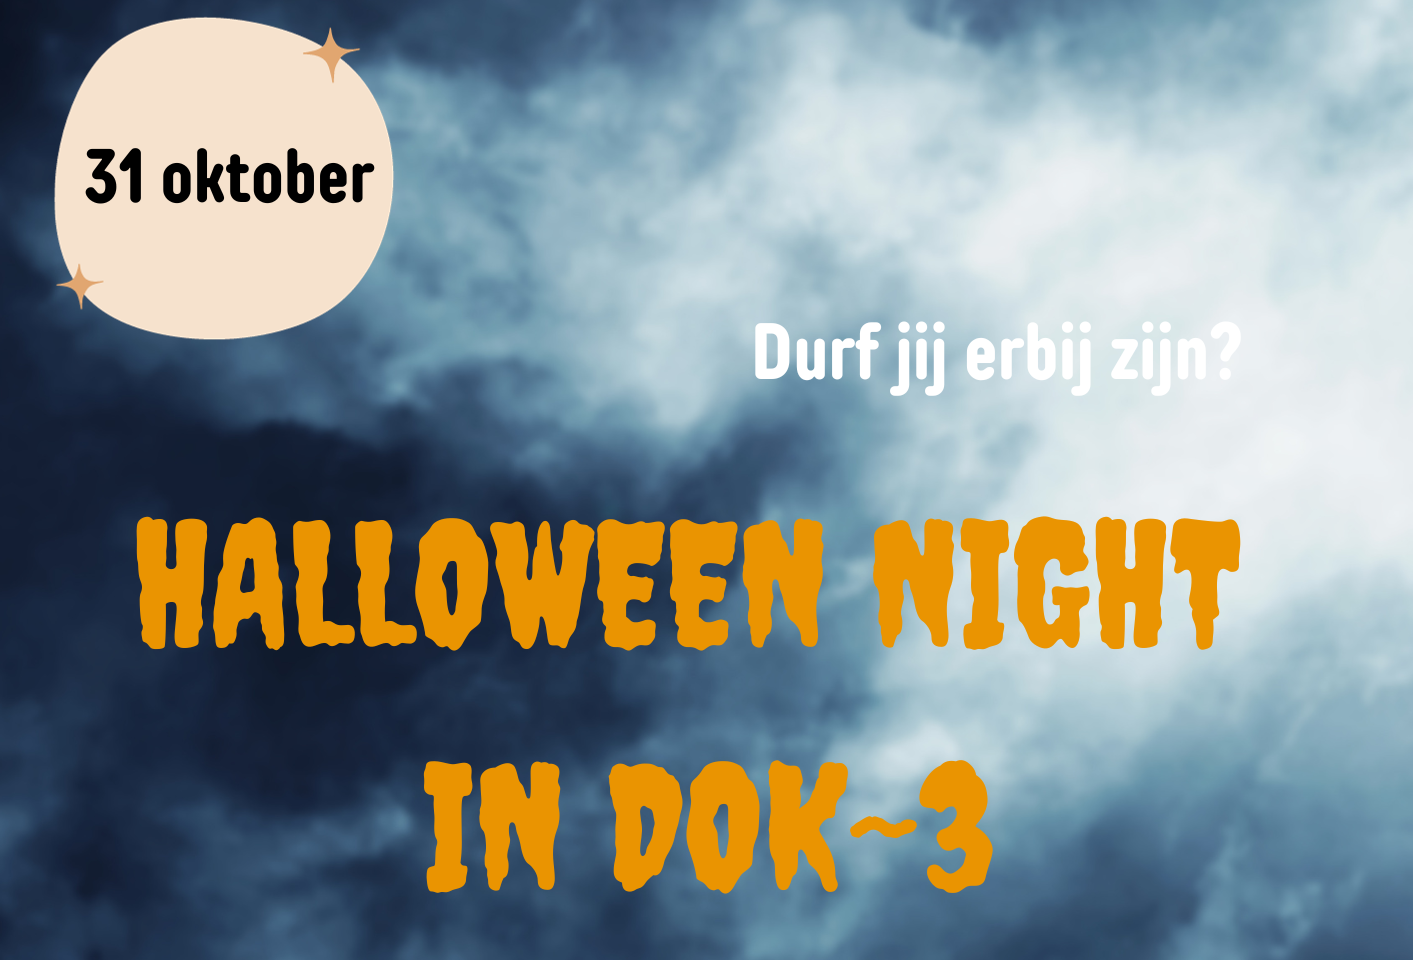 Halloweennight in DOK~3 in Aartselaar